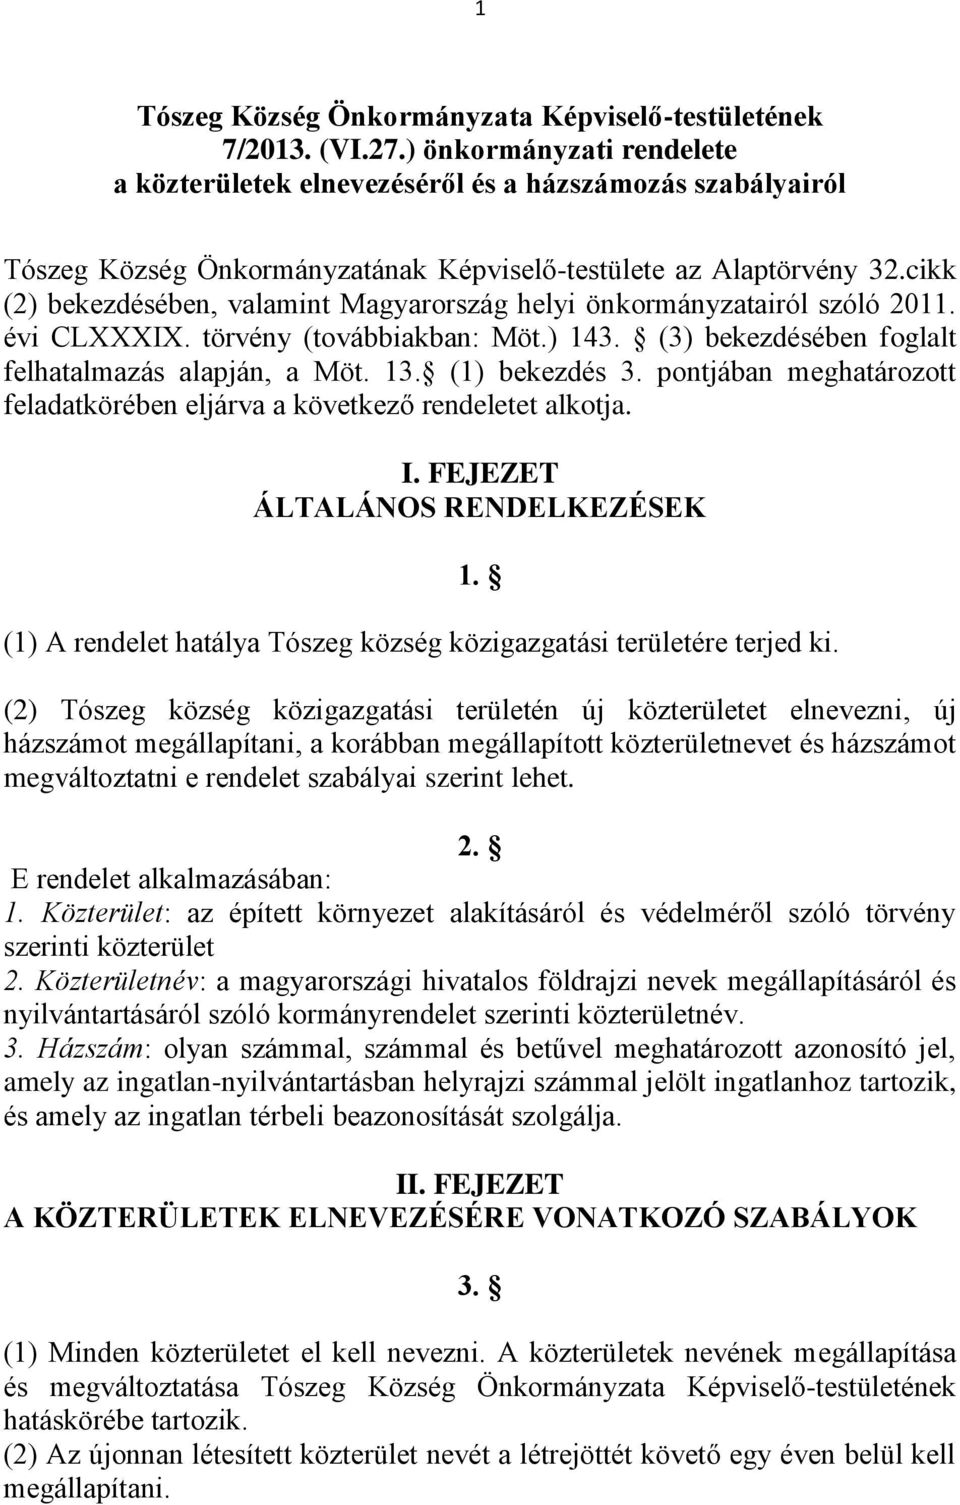 cikk (2) bekezdésében, valamint Magyarország helyi önkormányzatairól szóló 2011. évi CLXXXIX. törvény (továbbiakban: Möt.) 143. (3) bekezdésében foglalt felhatalmazás alapján, a Möt. 13.